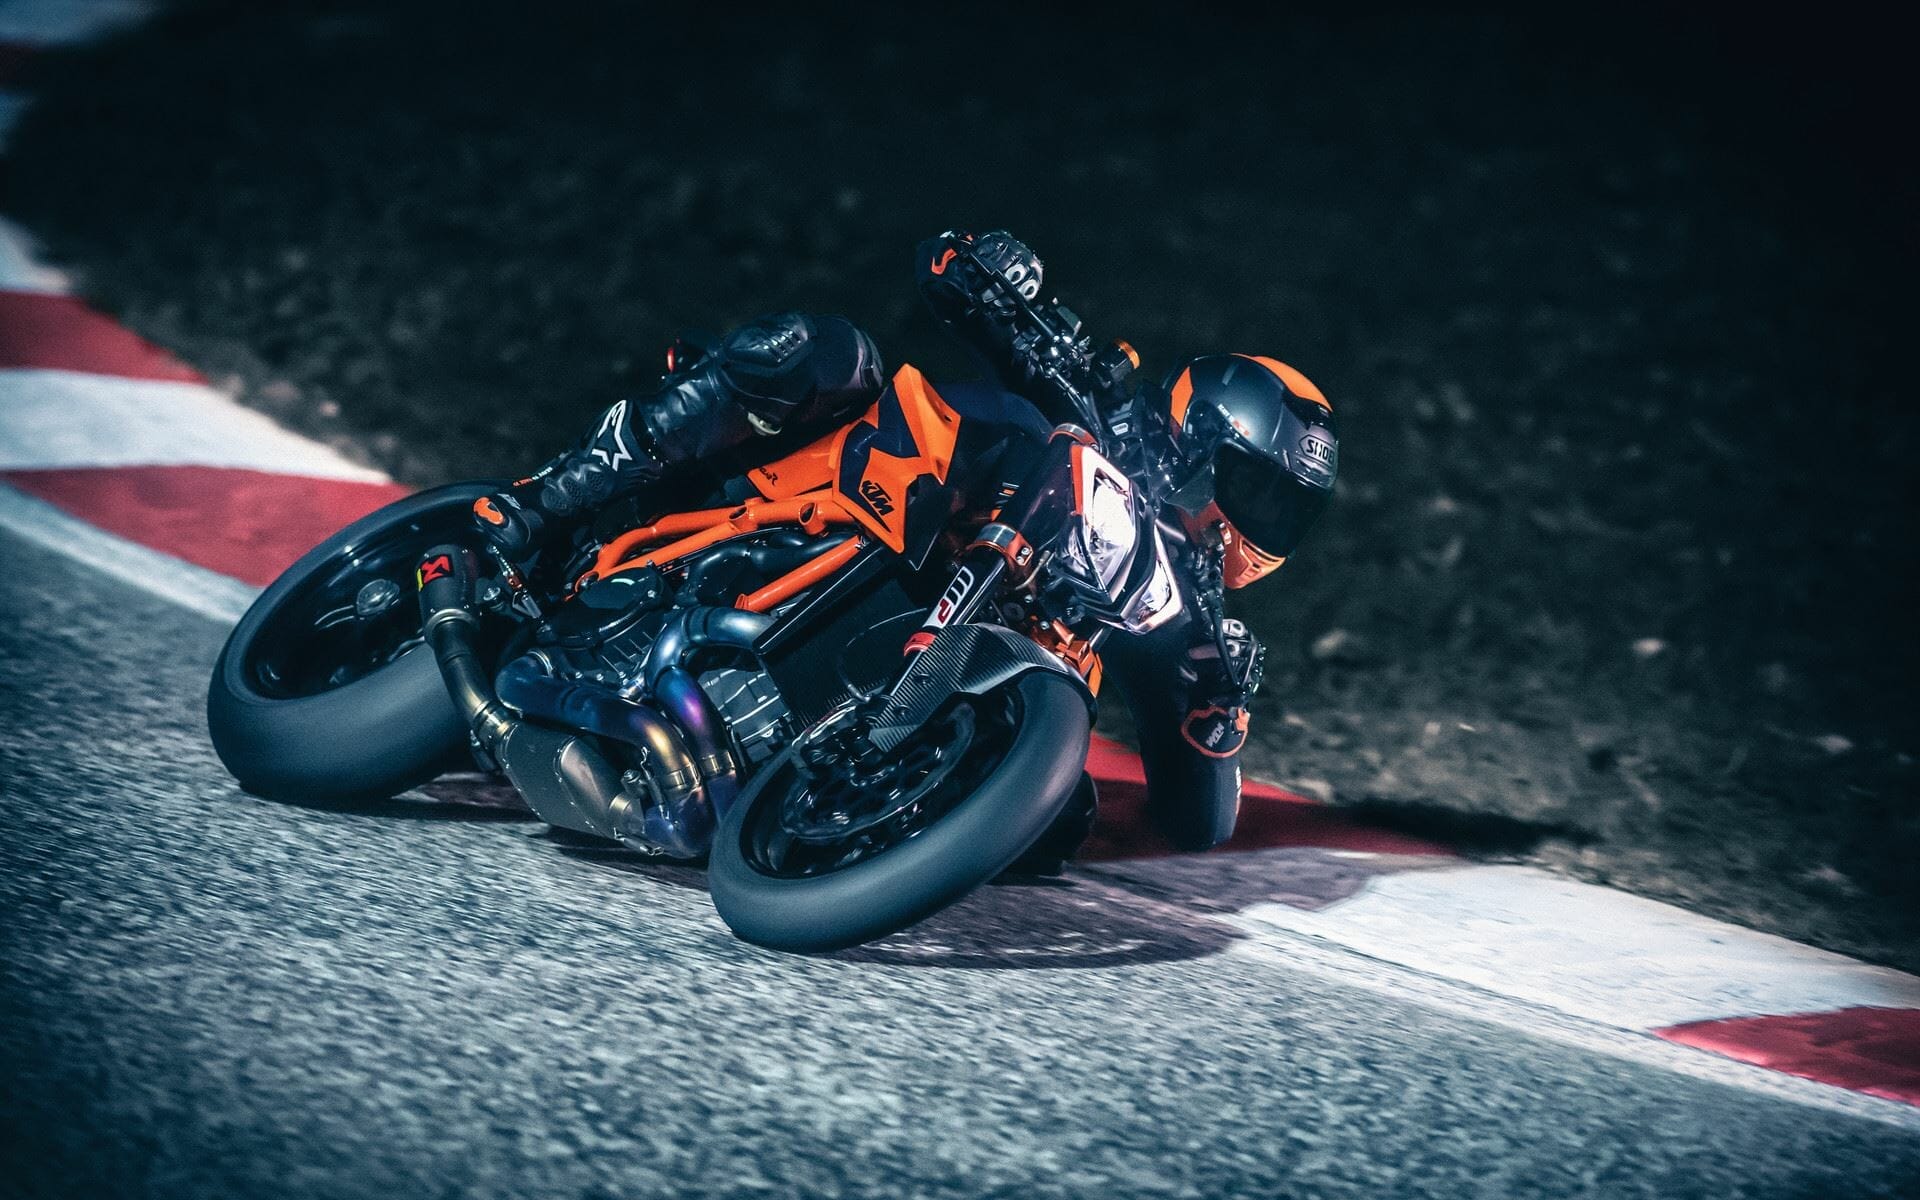 #KTM gibt #Modellpreise für 2020 bekannt
- auch in der Motorrad Nachrichten App